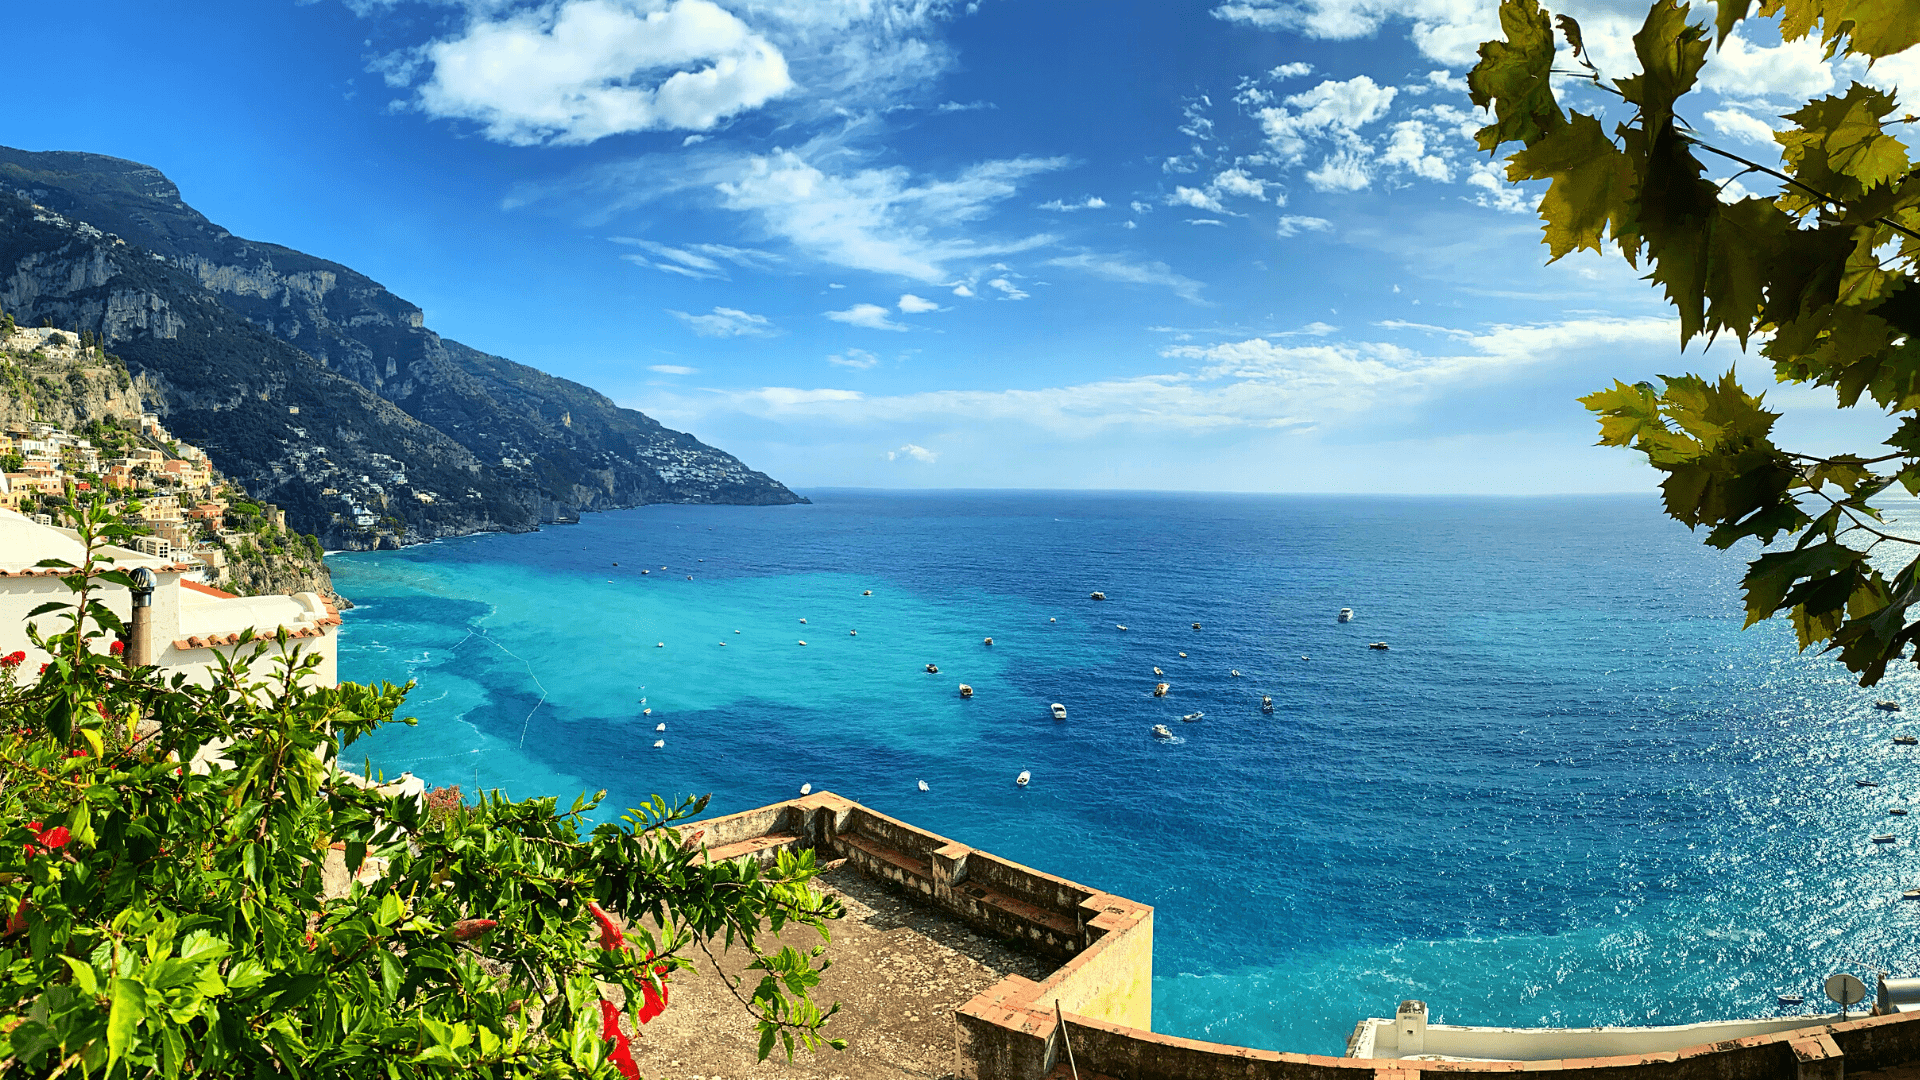 Signature Amalfi Coast